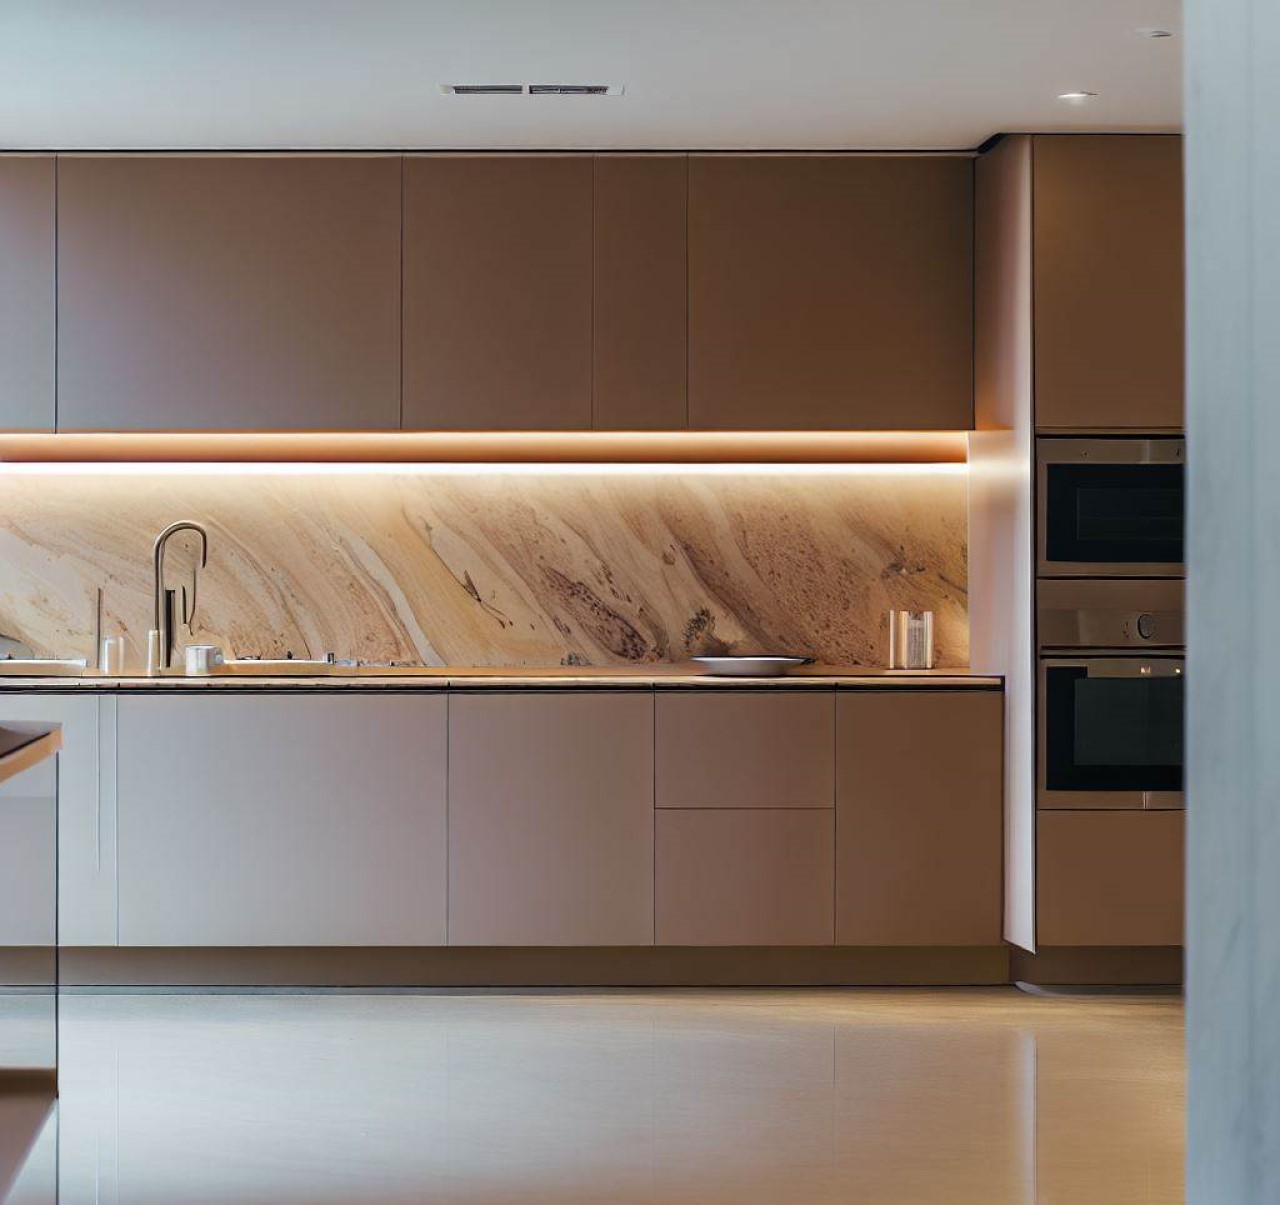 Cocina moderna y minimalista con gabinetes modernos color dunas